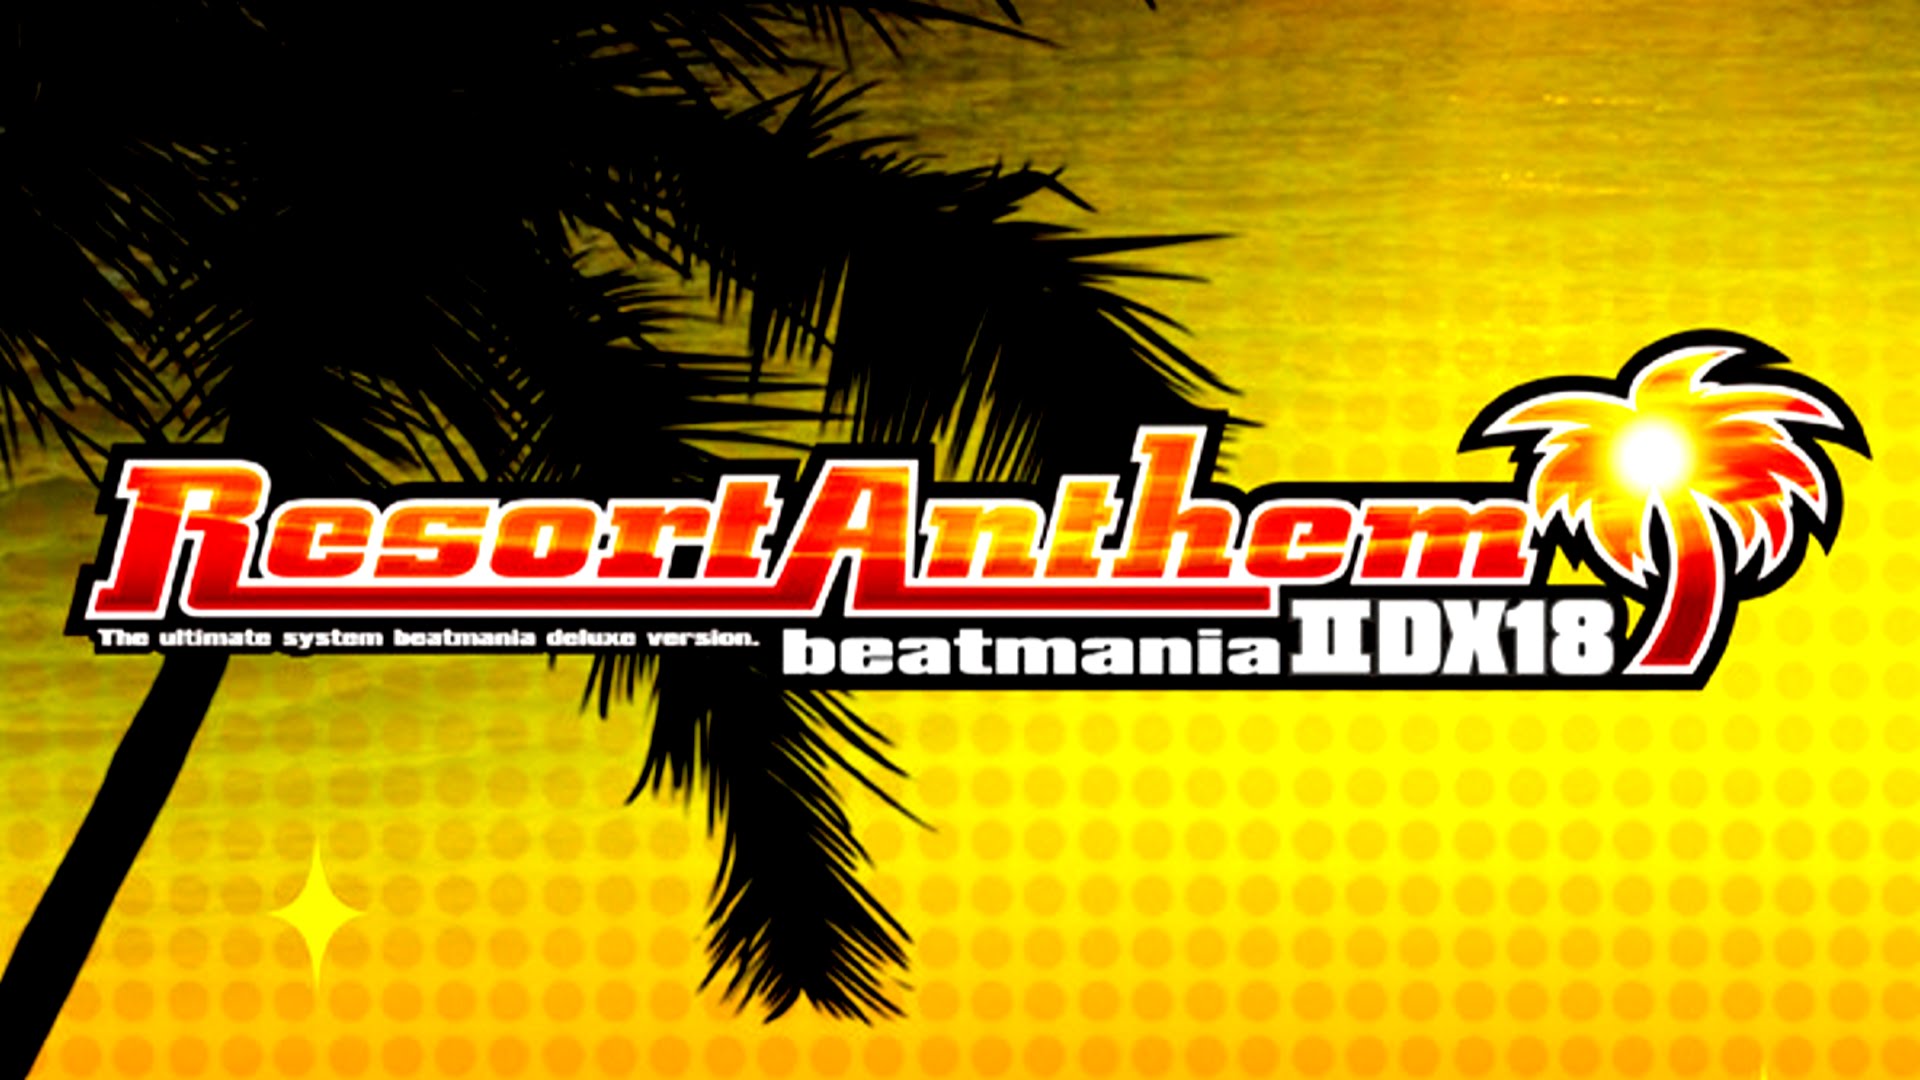 直売半額 beatmania ⅡDX18 Resort Anthem ポスター | www.pro13.pnp